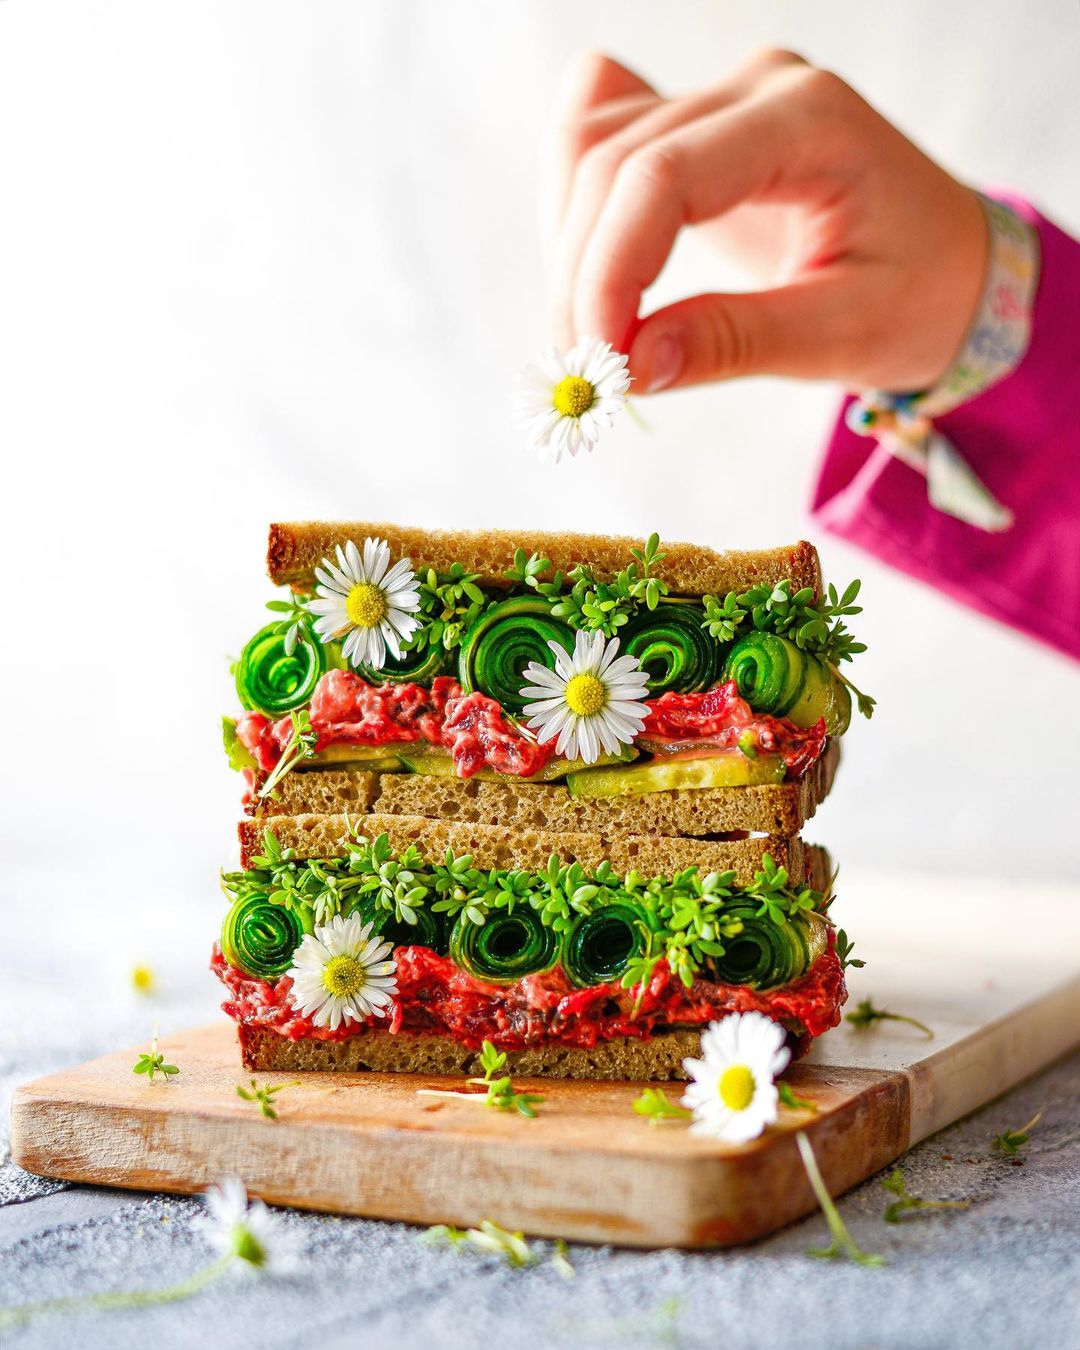 Vegan Beetroot-Horseradish & Walnut Bread Spread